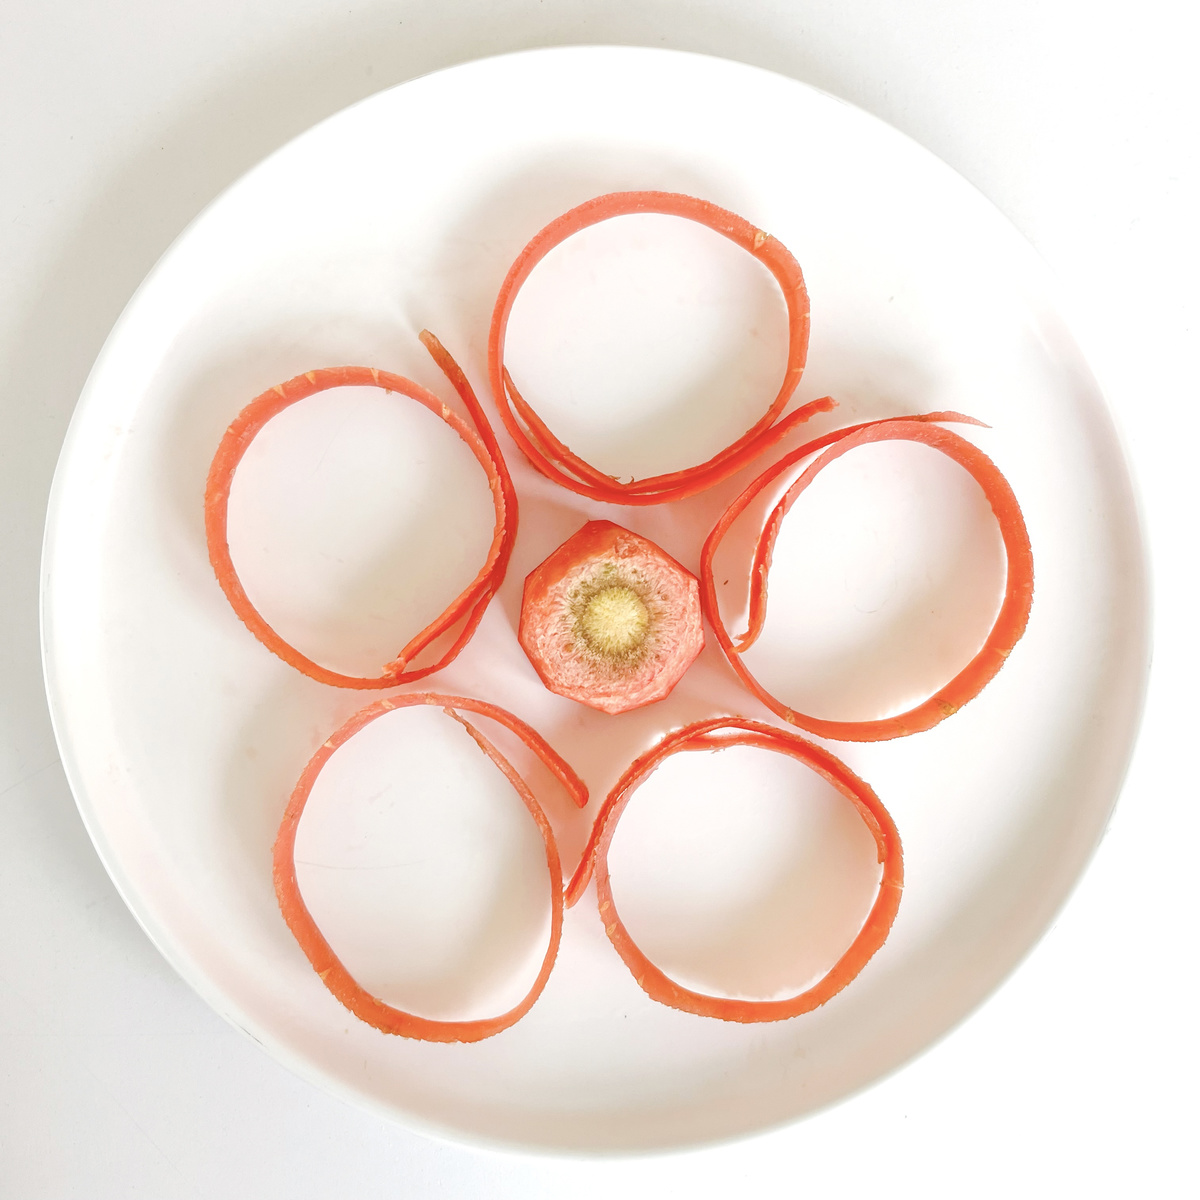 鸡蛋和胡萝卜切片覆盖的白盘